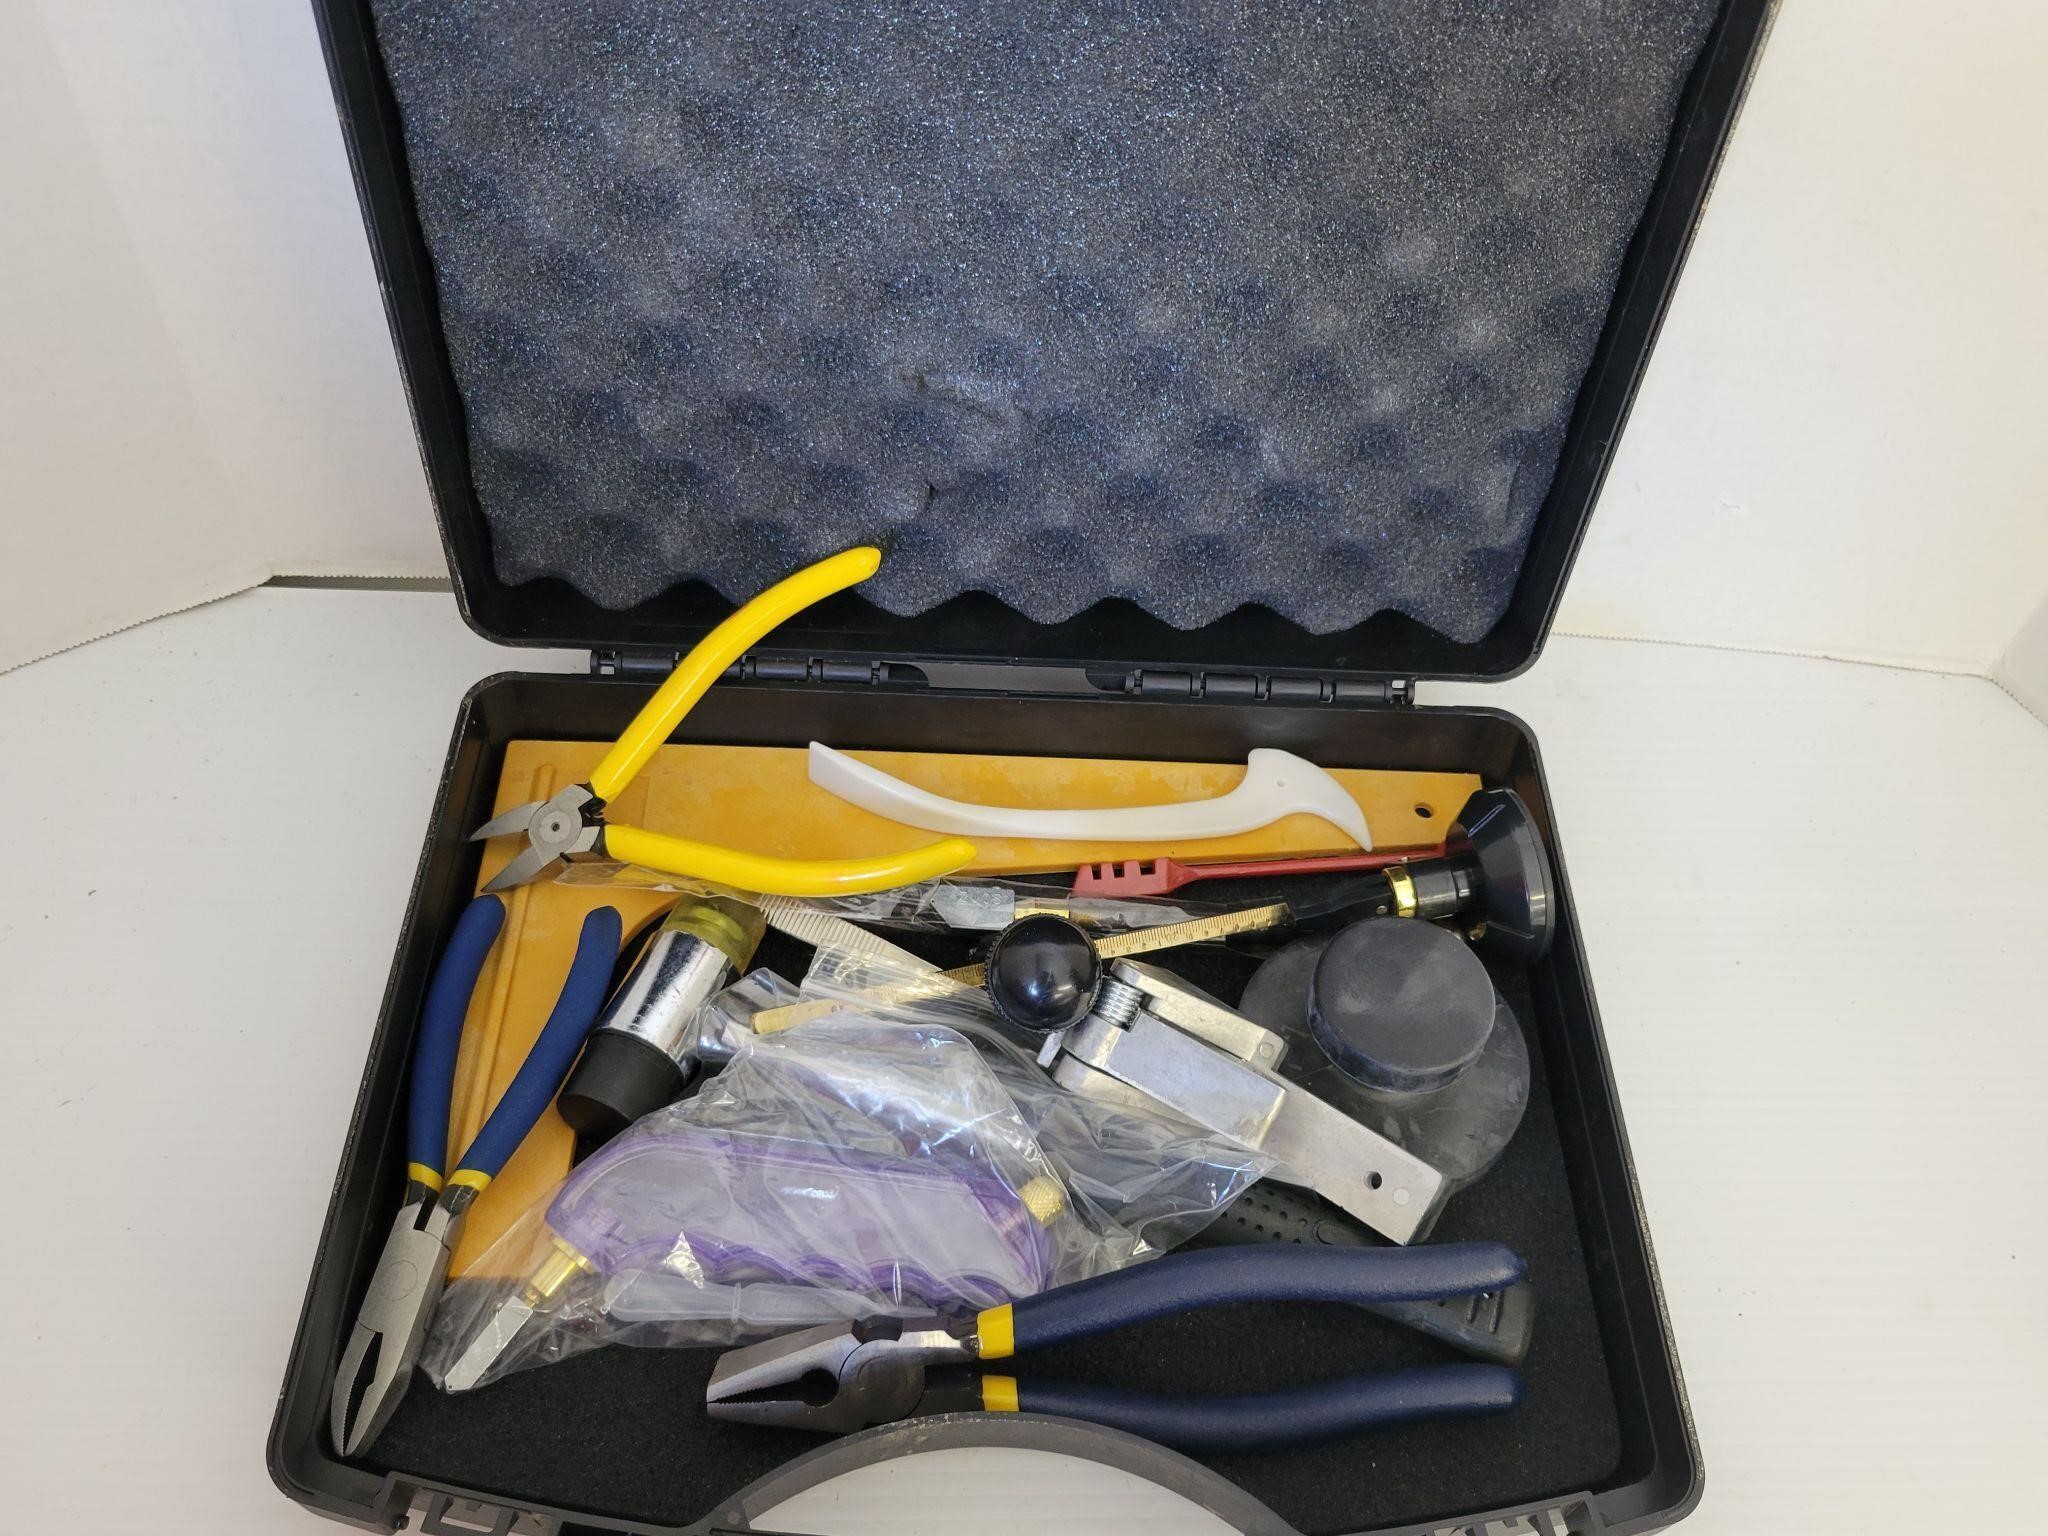 Case full of tools